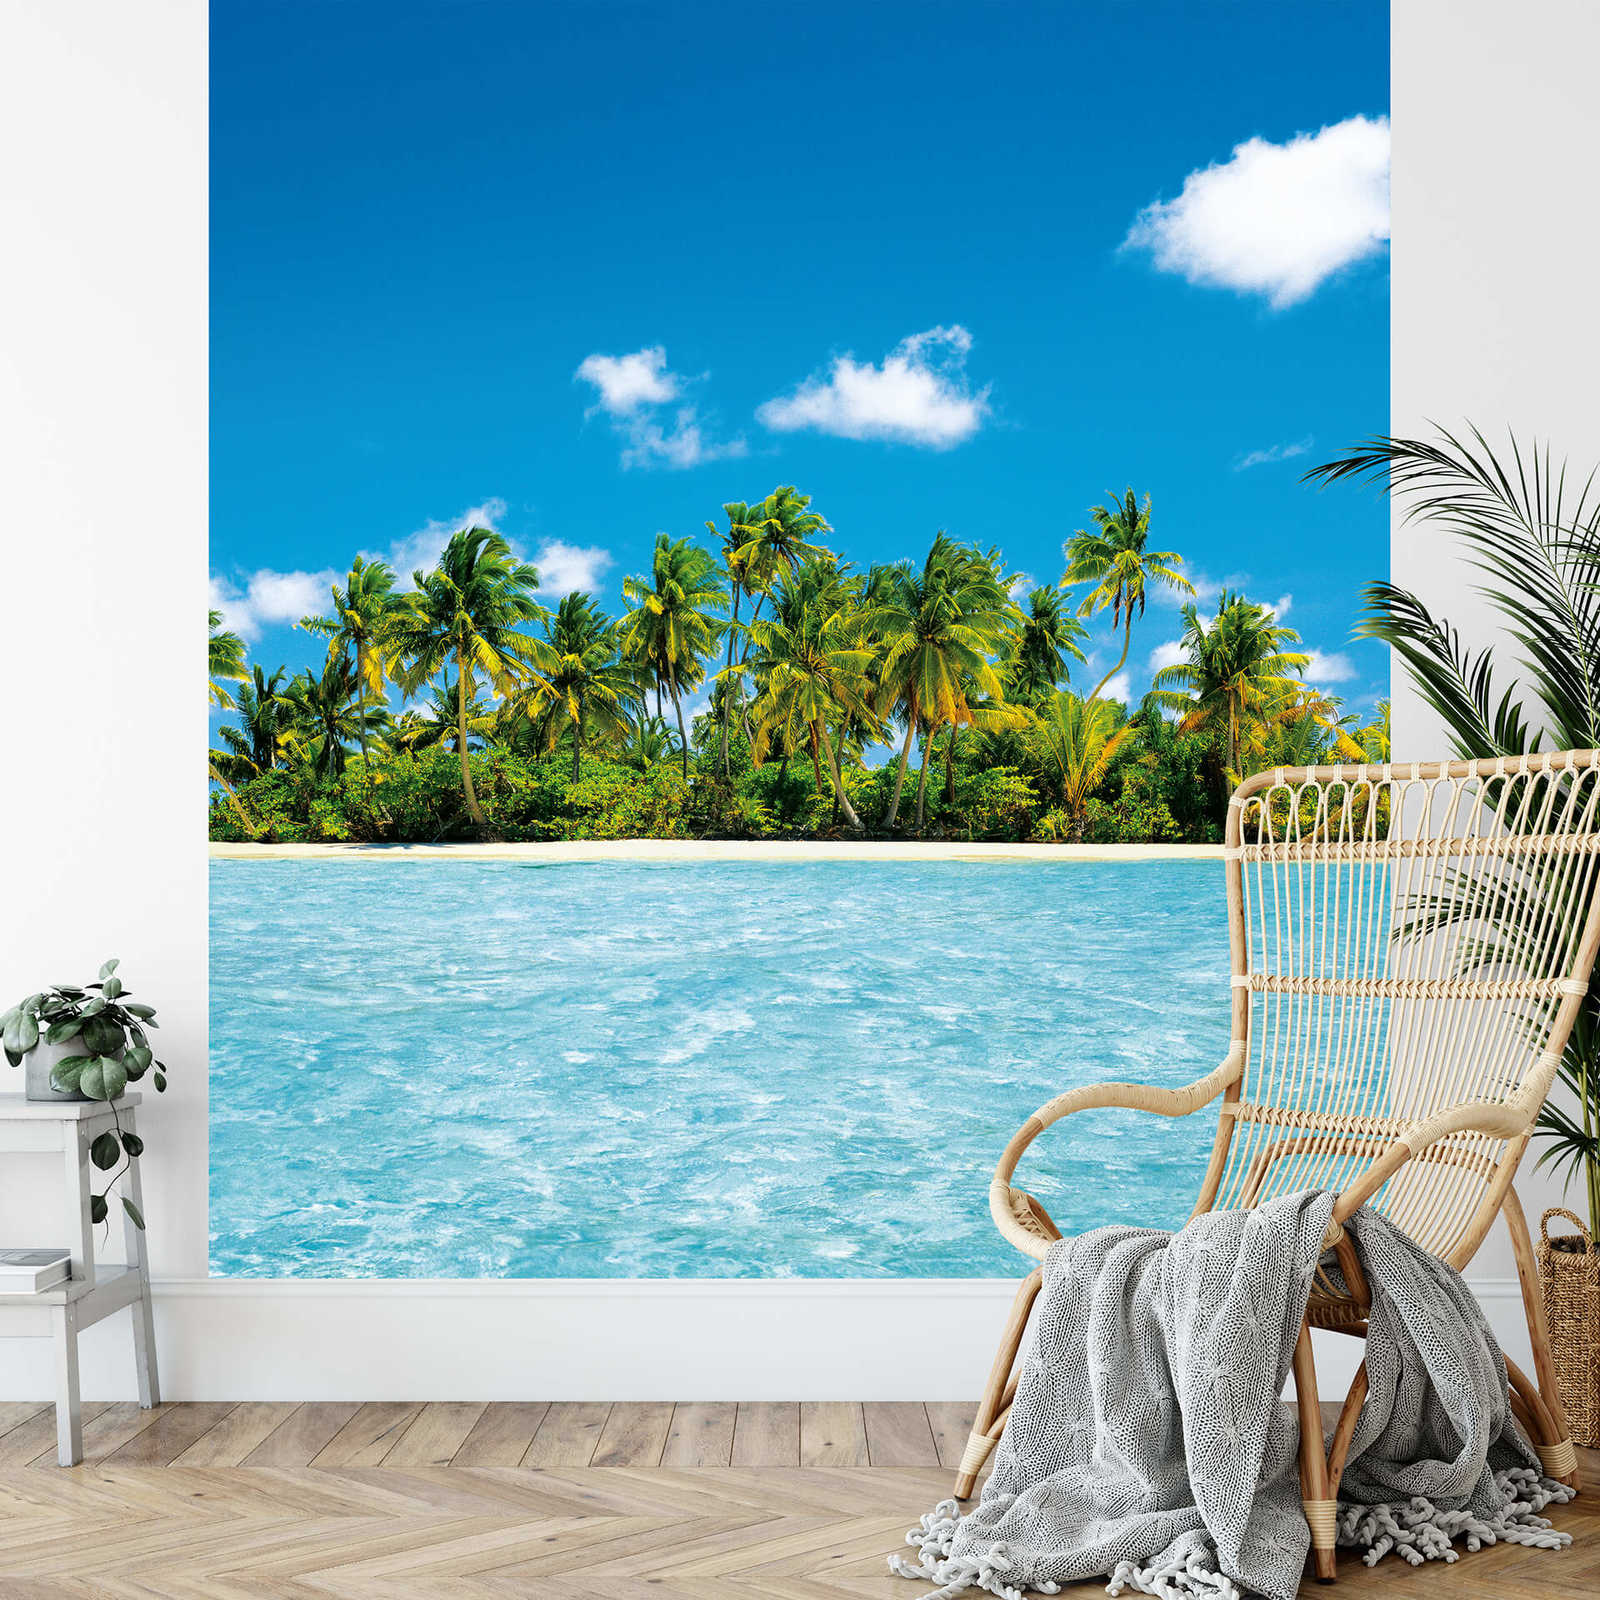             Papel pintado de las Maldivas, con palmeras y mar, en formato vertical
        